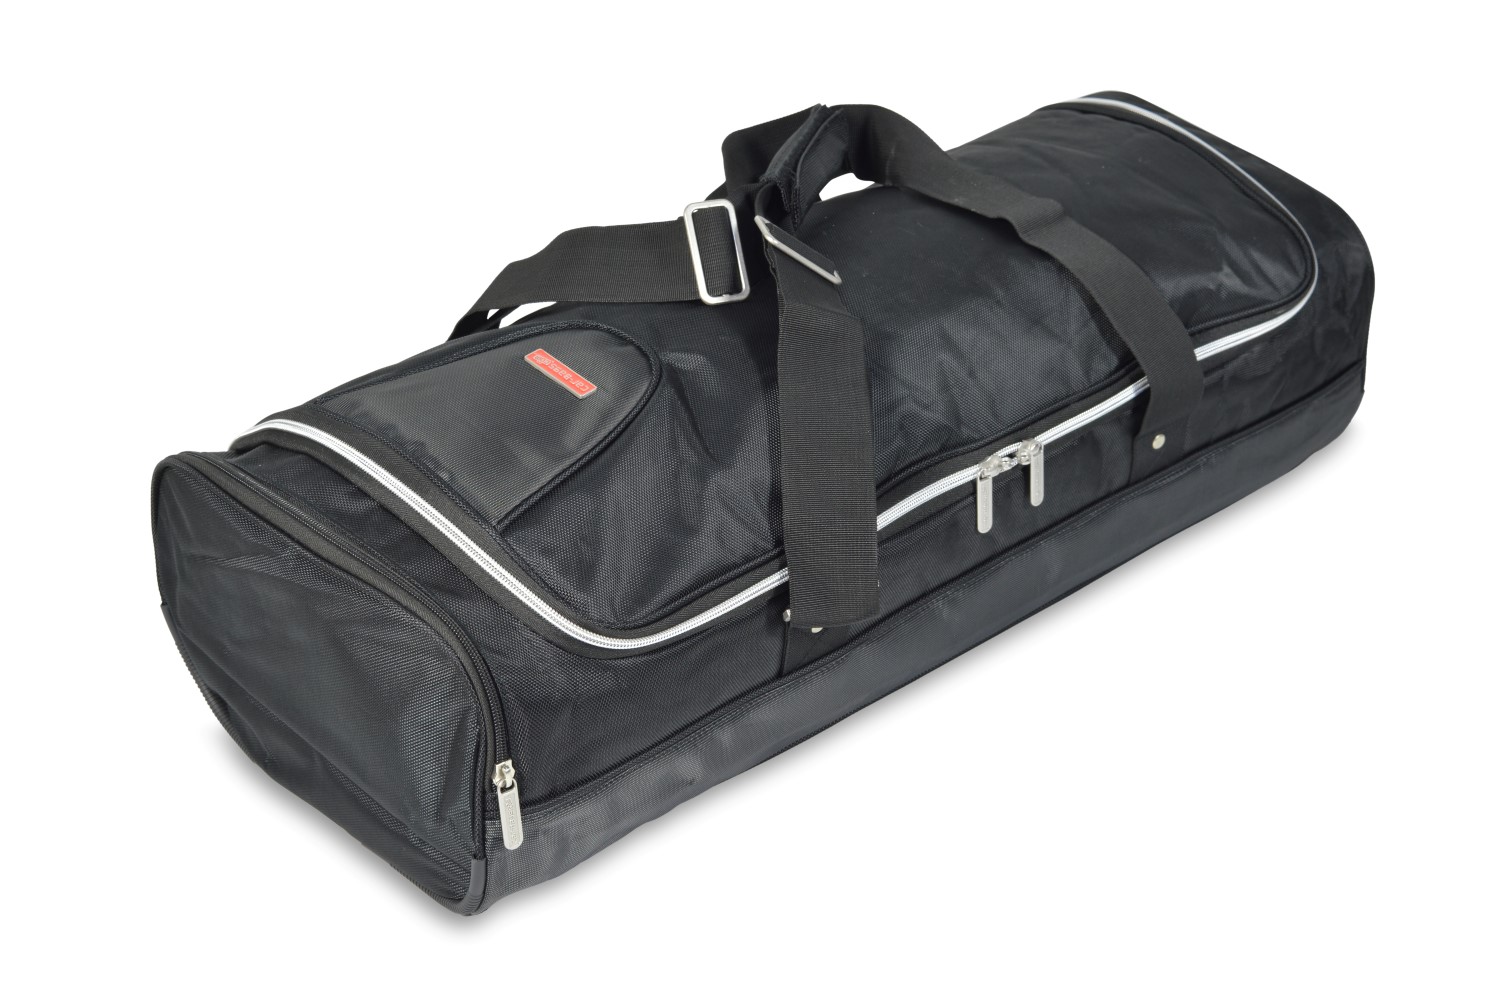 Travel bag - 31x21x80cm (WxHxL)